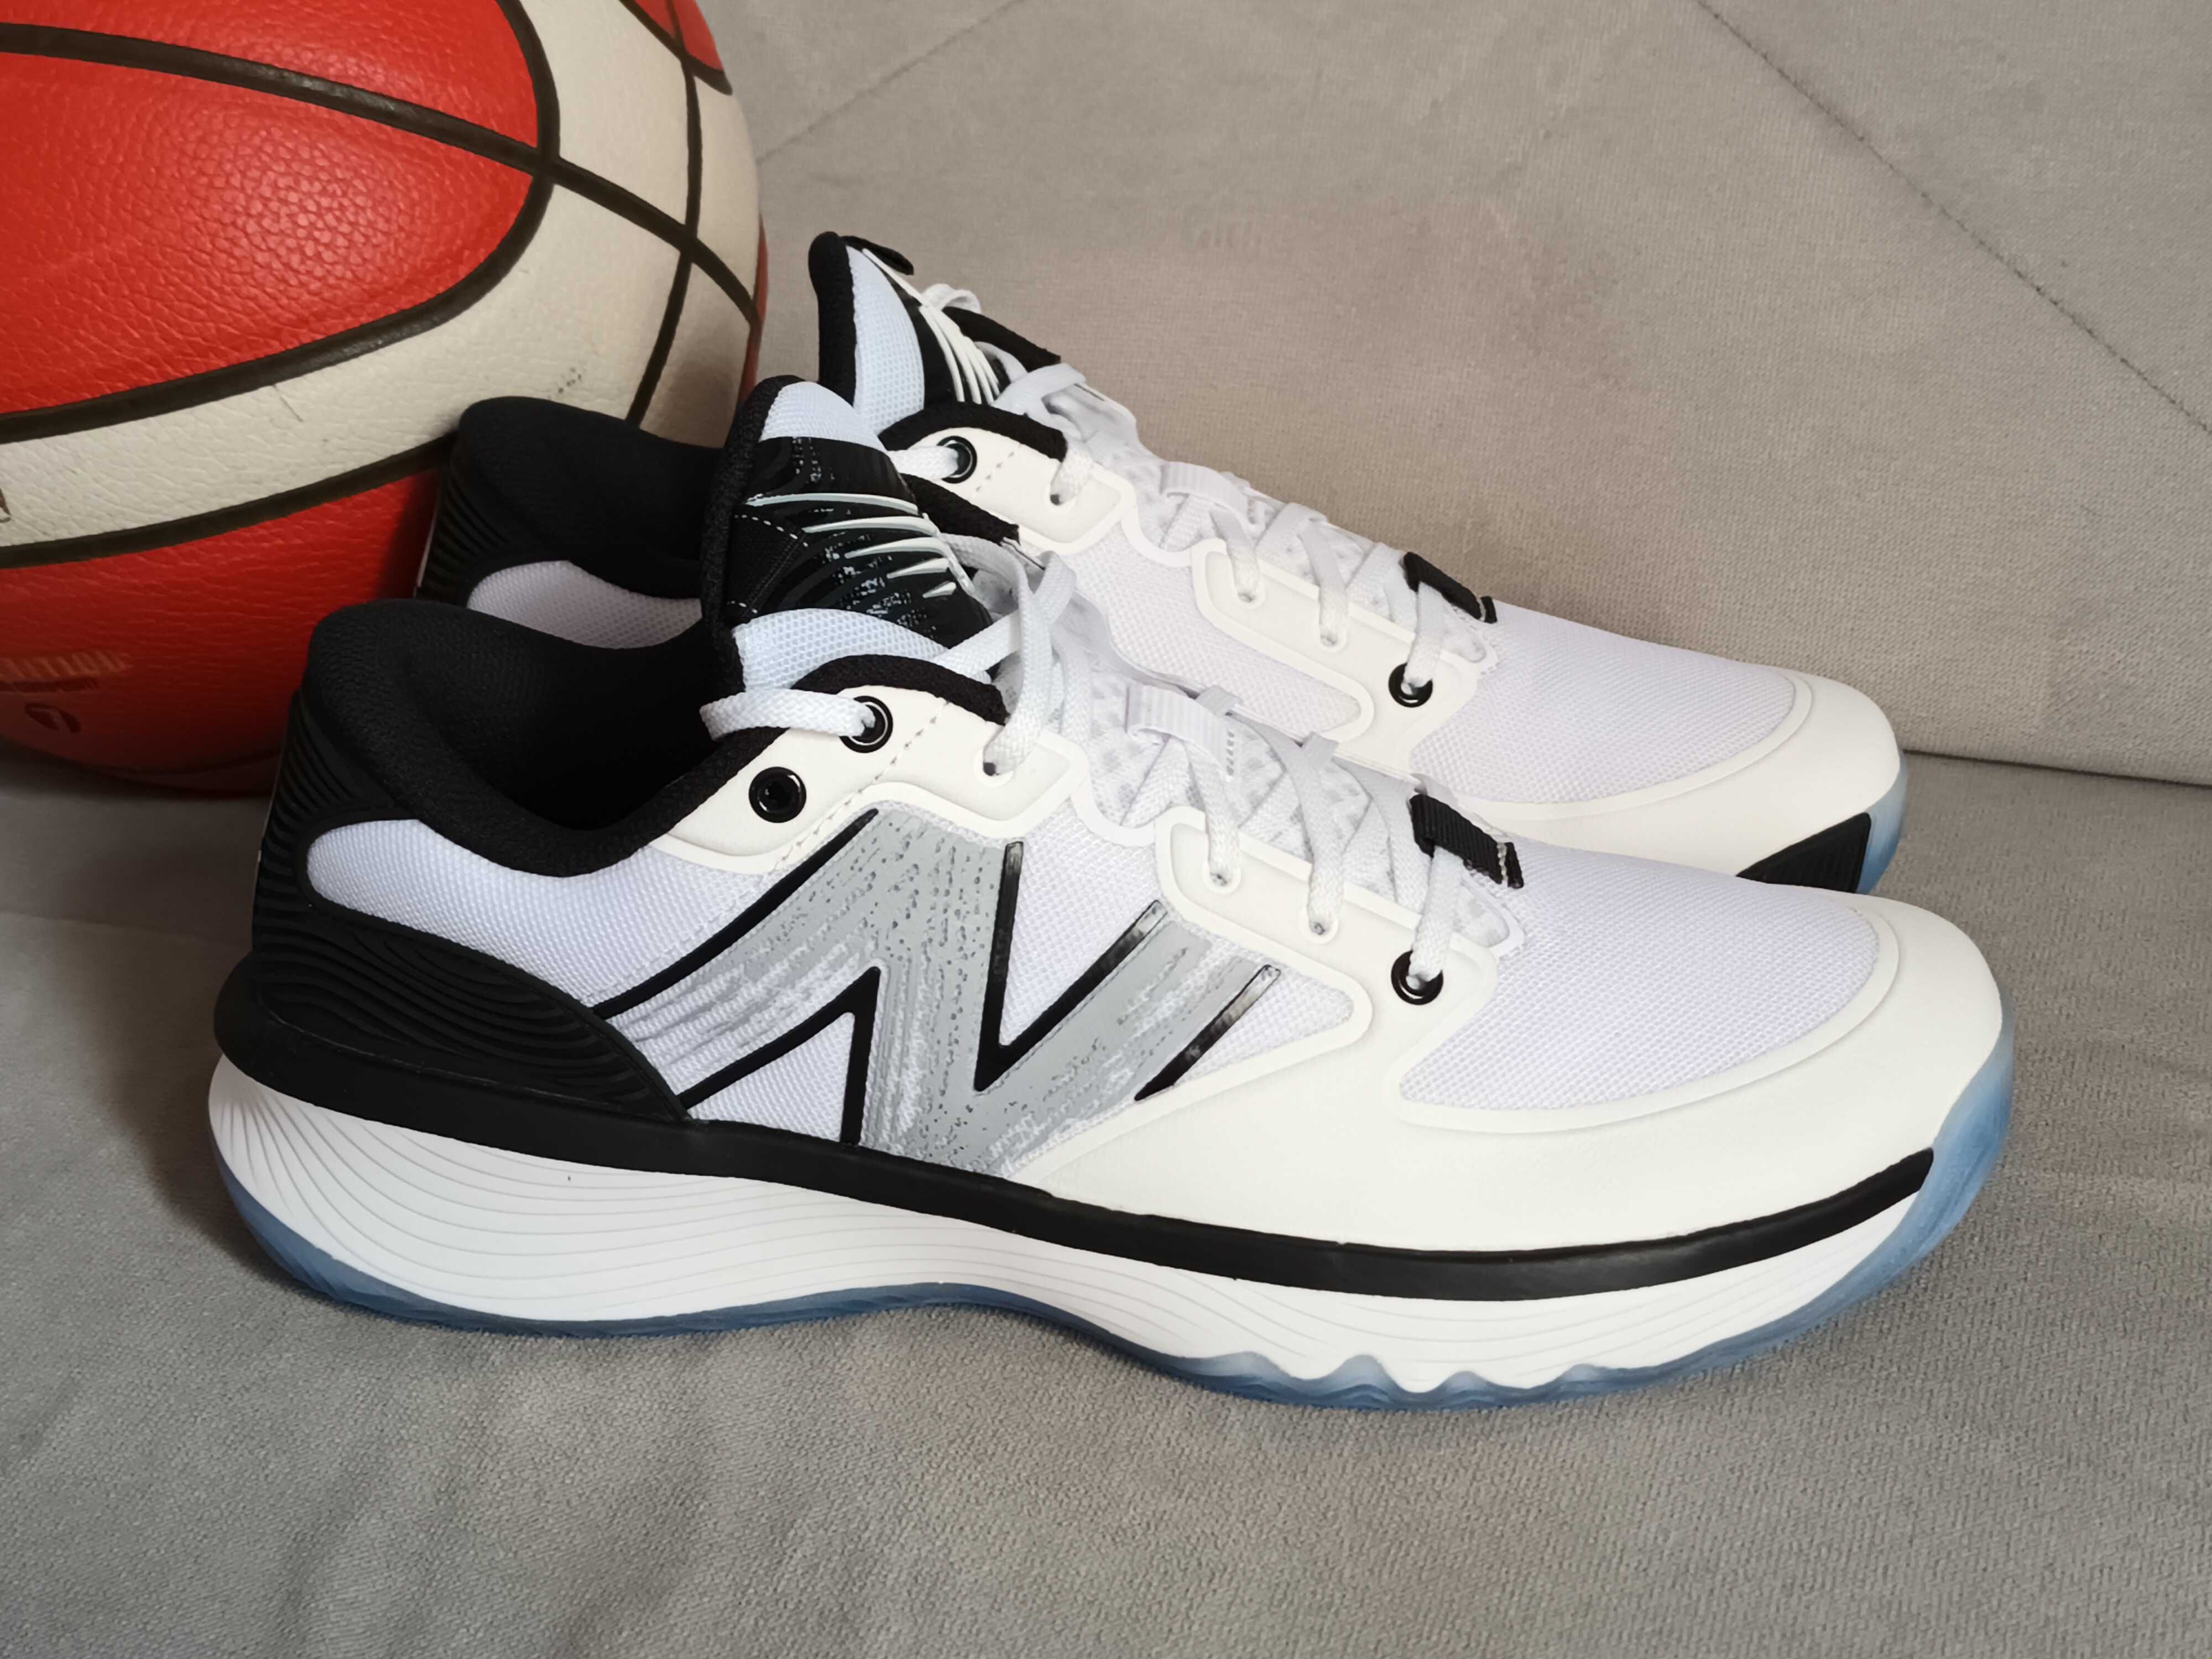 New Balance Hesi Low nowe 45 buty do koszykówki nba Jordan kobe lebron